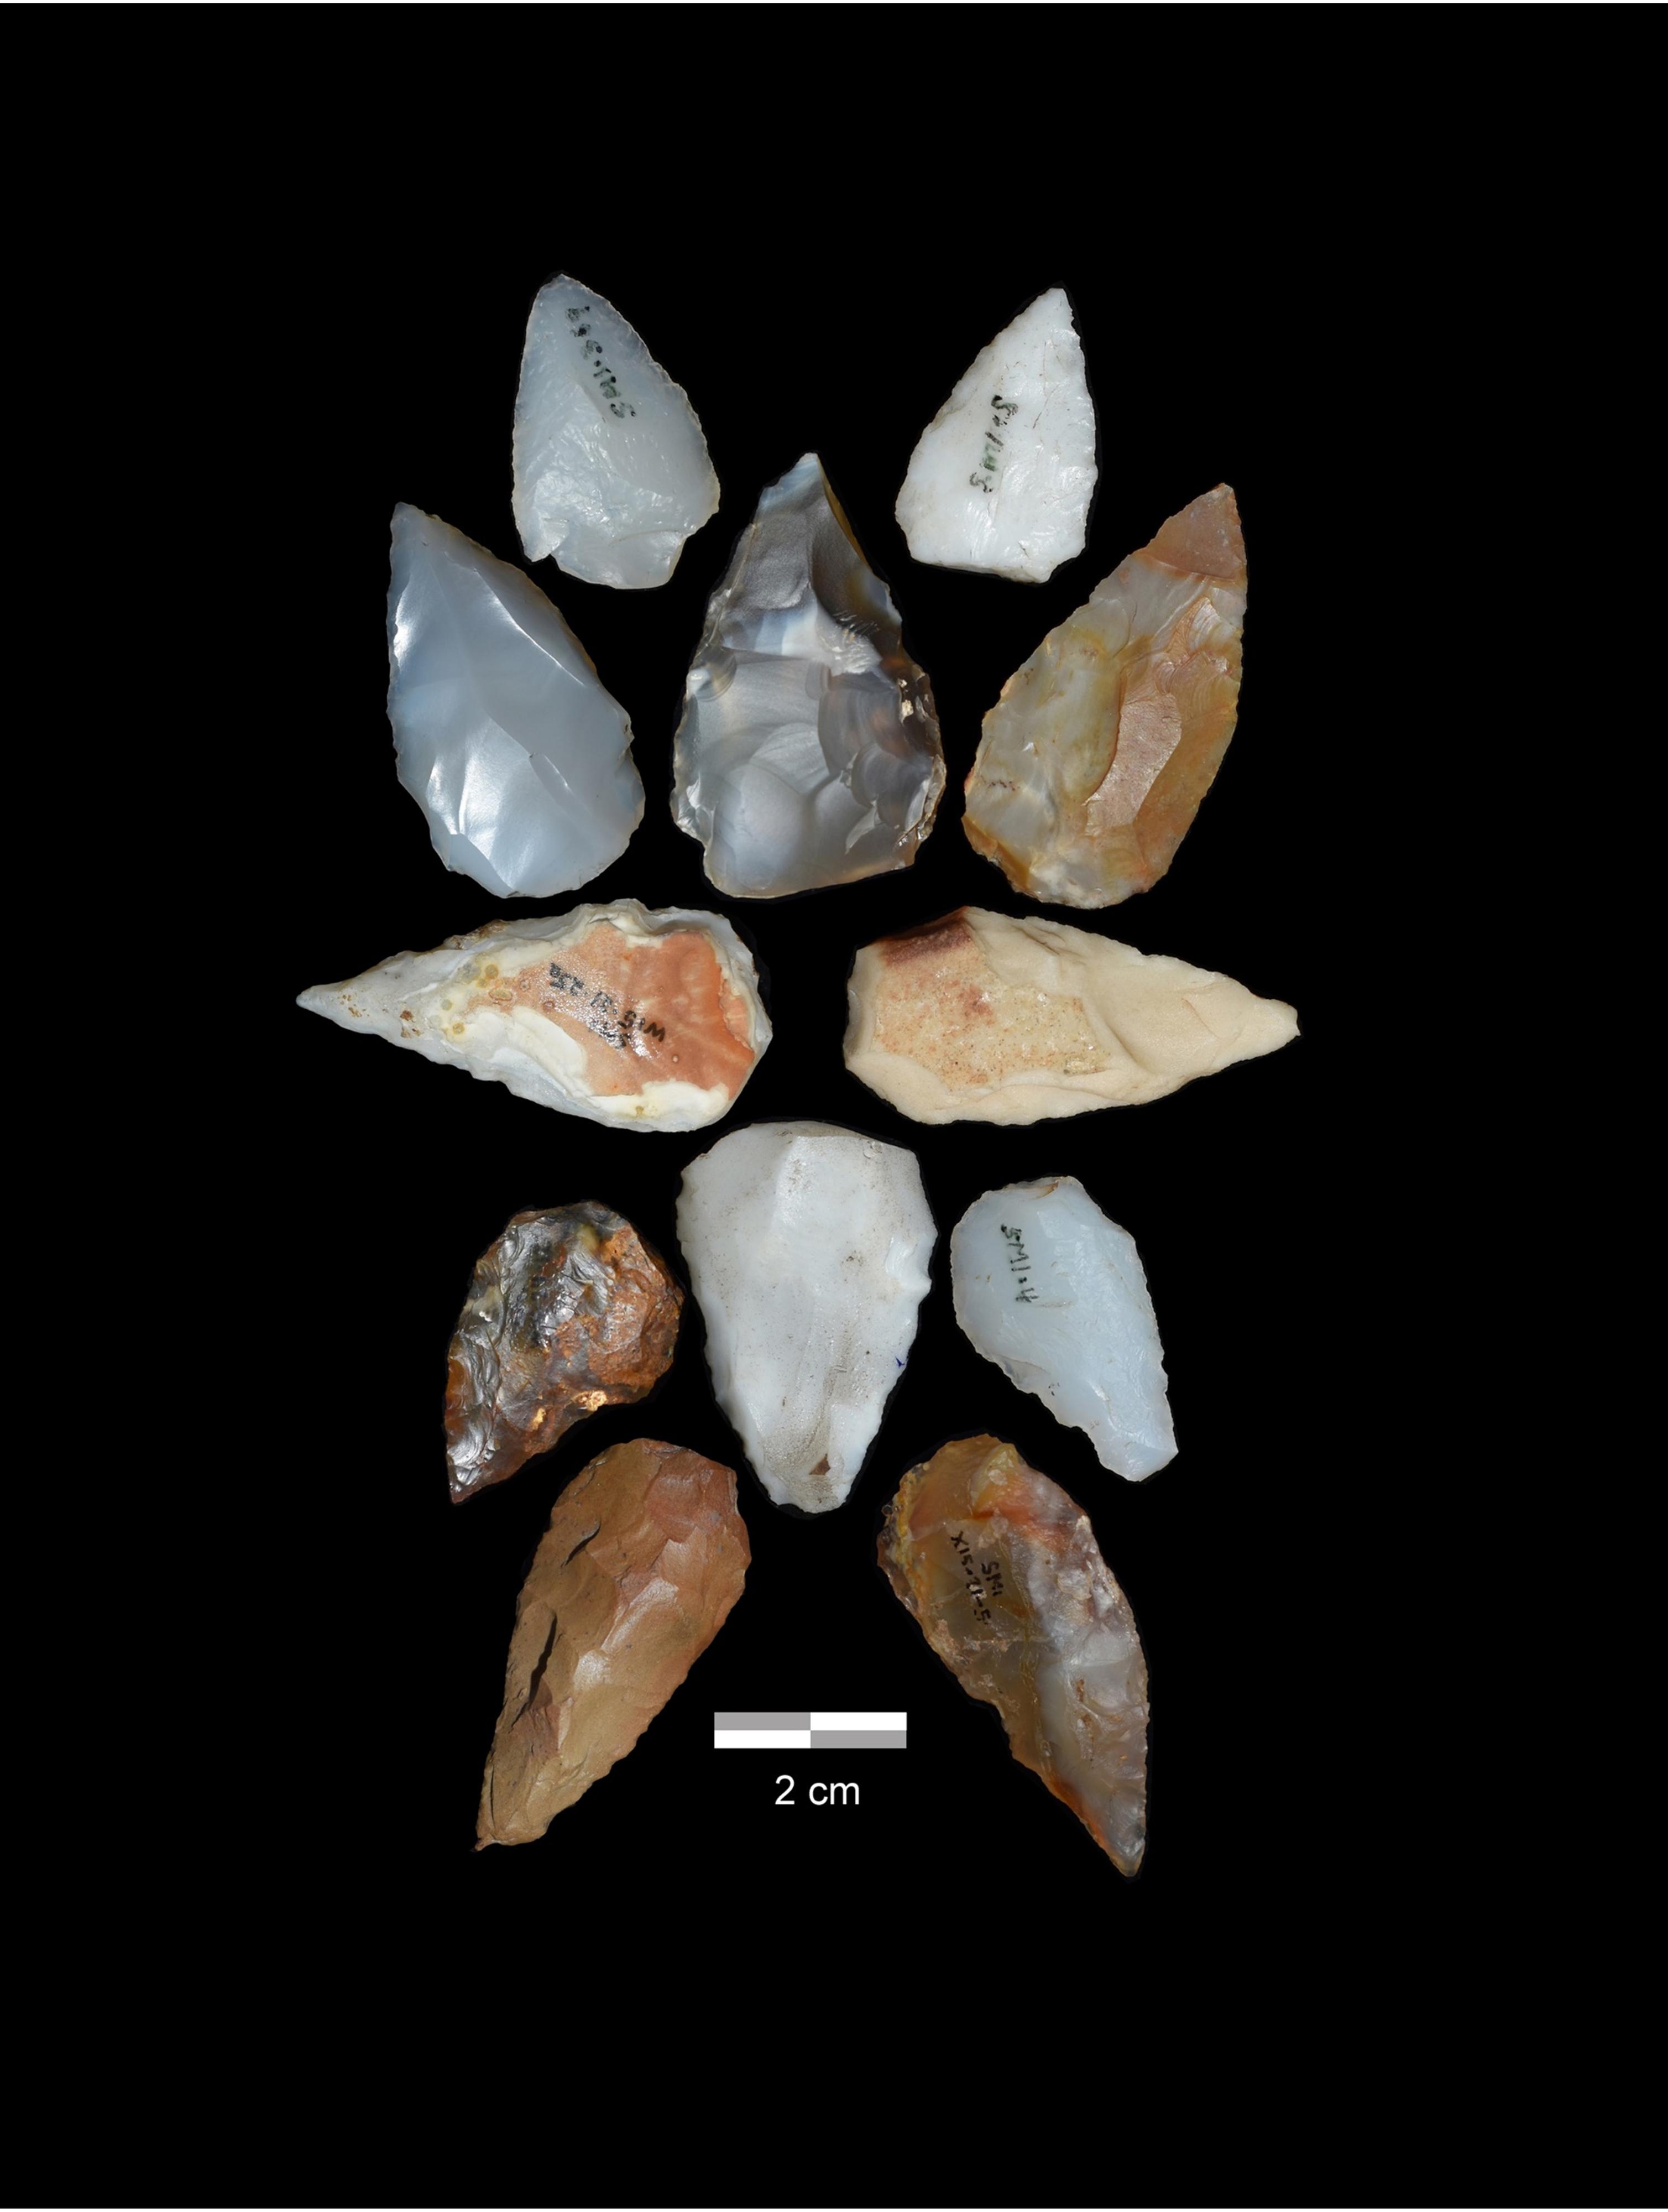 에티오피아 북서부 저지대 신파강 근처에 있는 중석기 시대 고인류 유적지에서 발견된 석기 유적. 블루 나일 서베이 프로젝트 제공